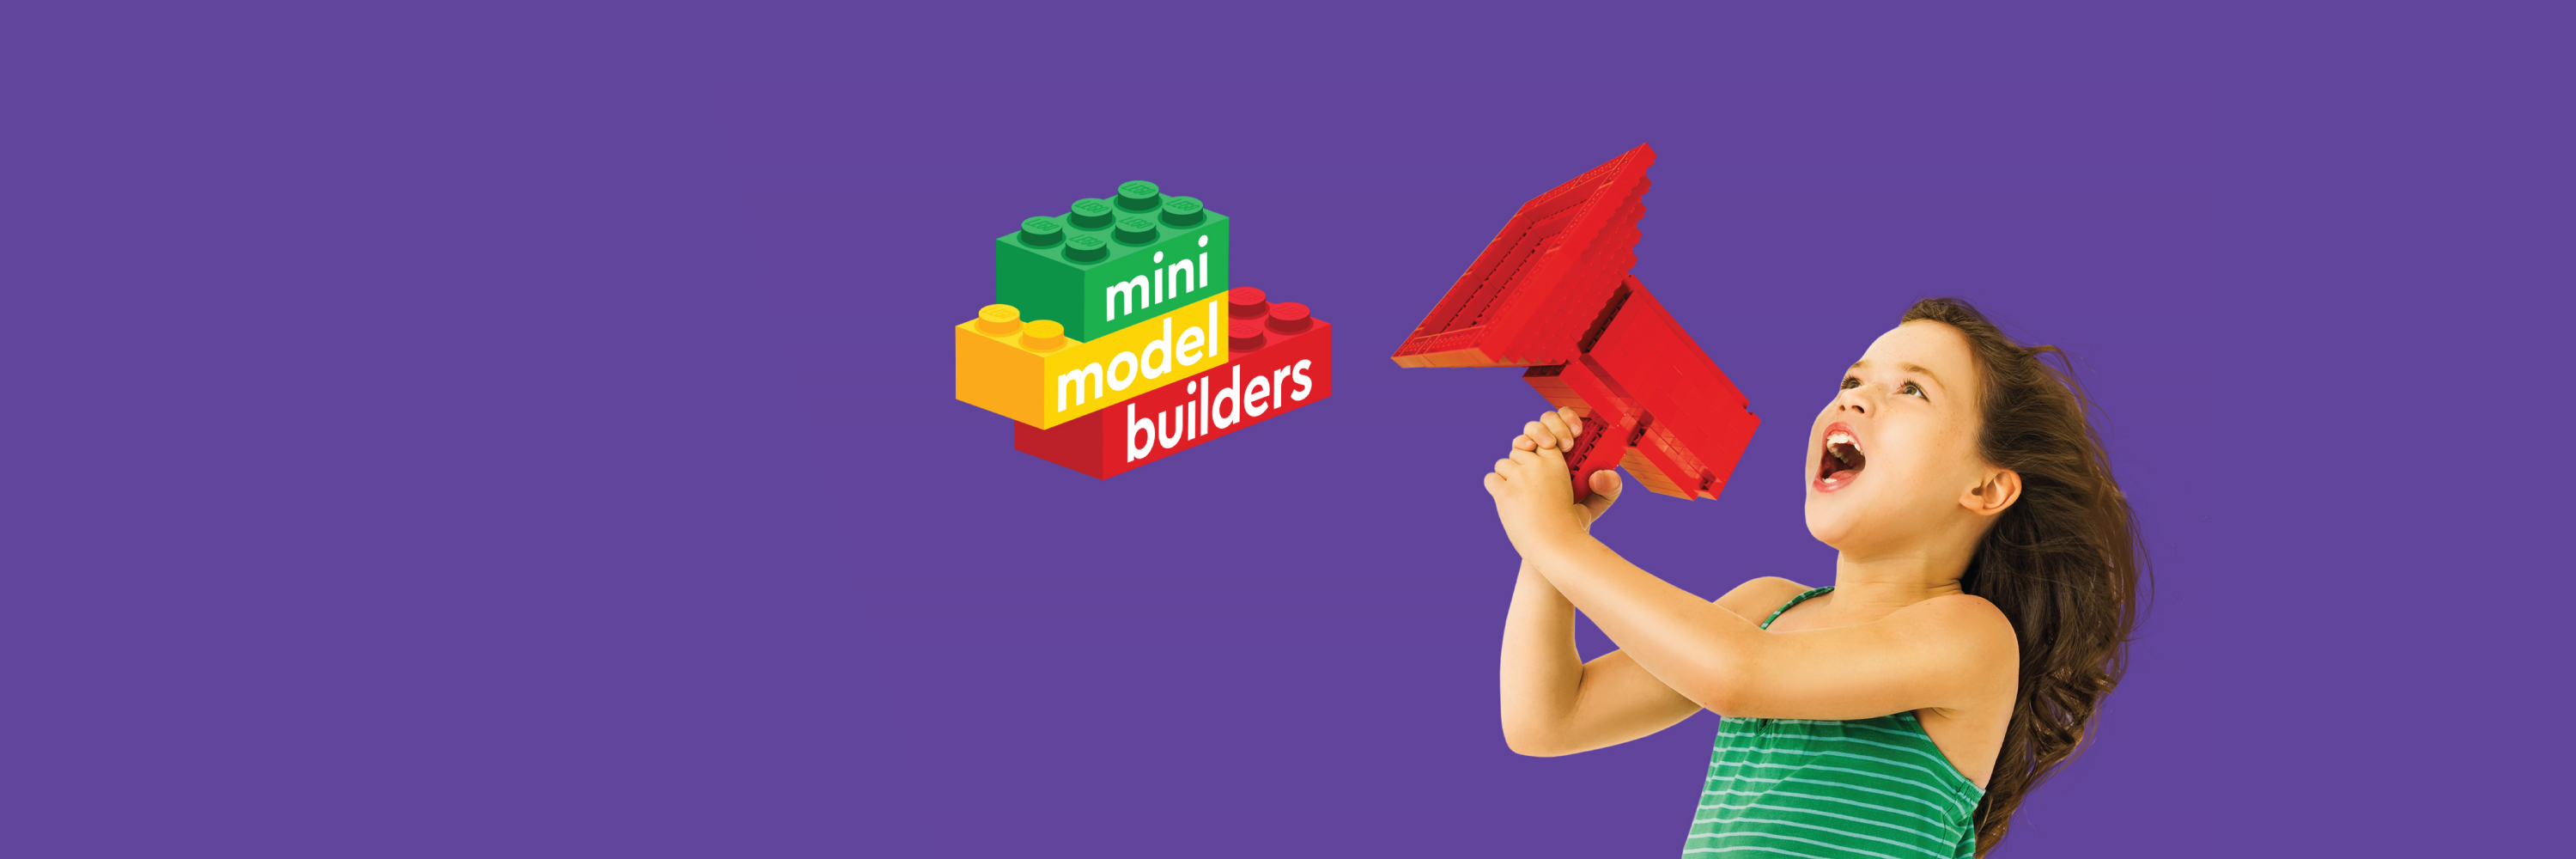 Mini Model Builders